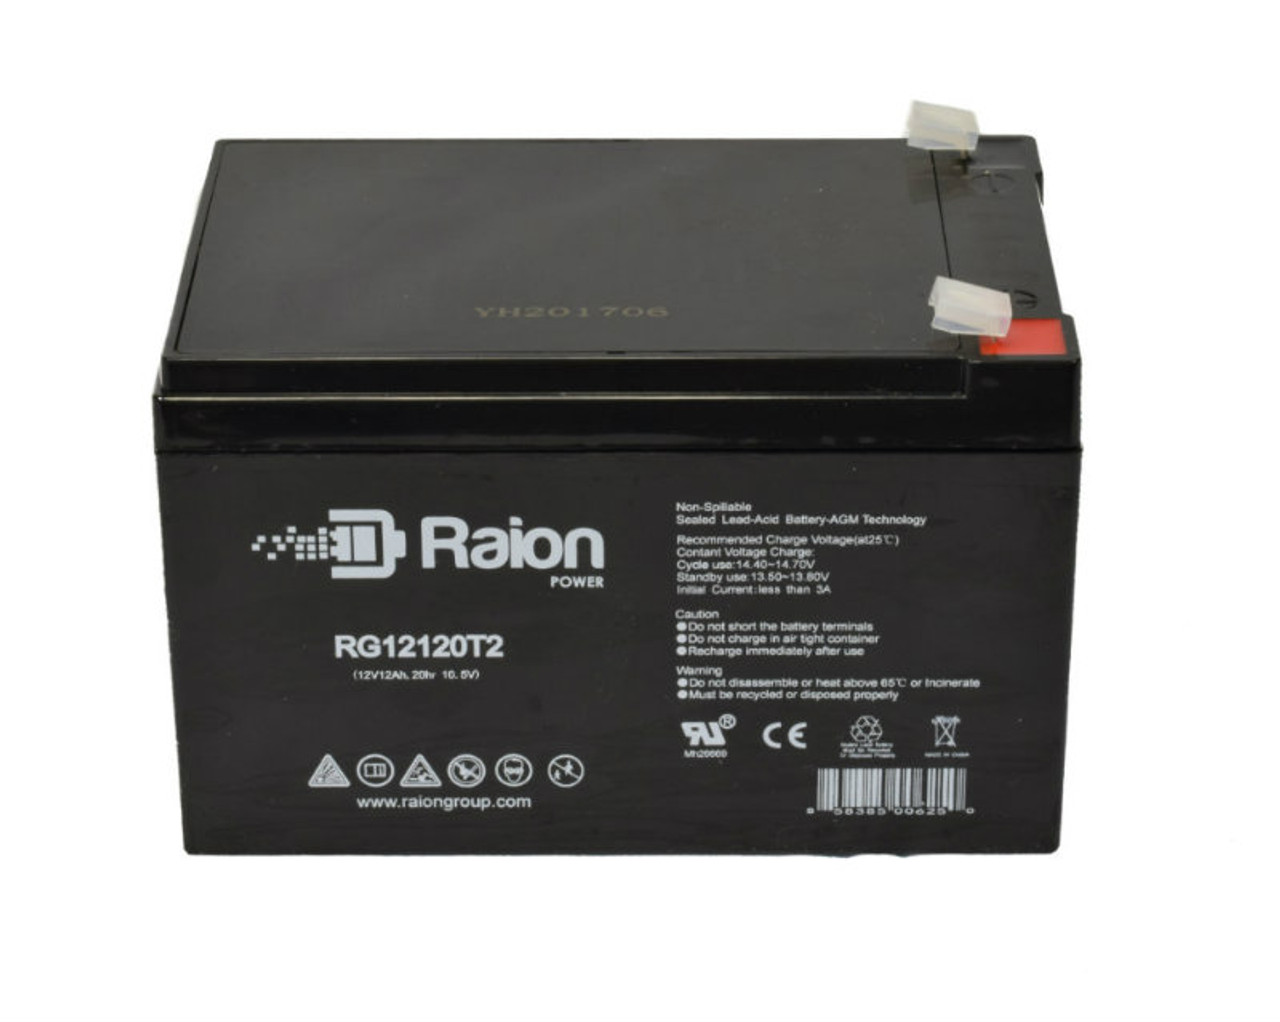 Raion Power RG12120T2 SLA Battery for OUTDO OT12-12(HR)